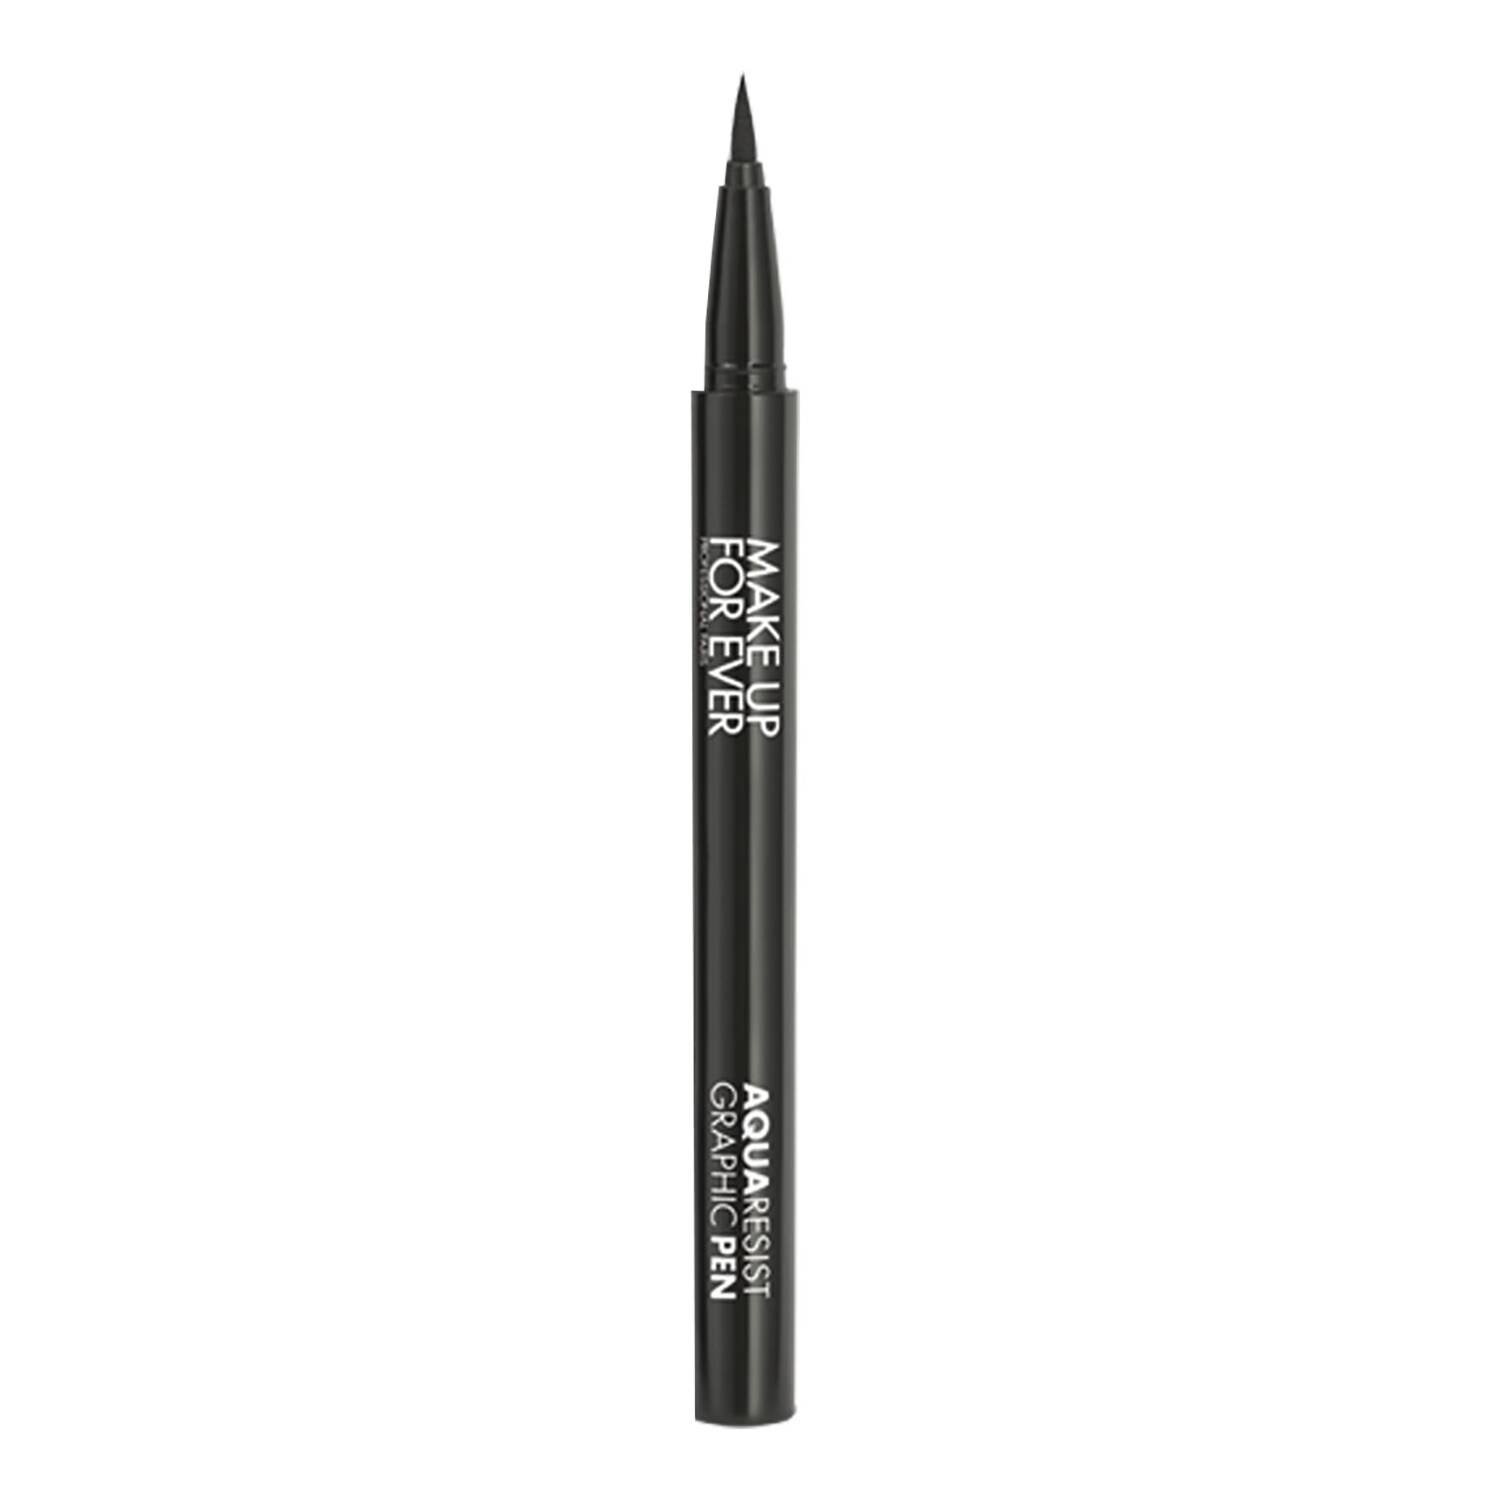 Make Up For Ever Aqua Resist Aqua Resist Graphic Pen Black 0.52Ml